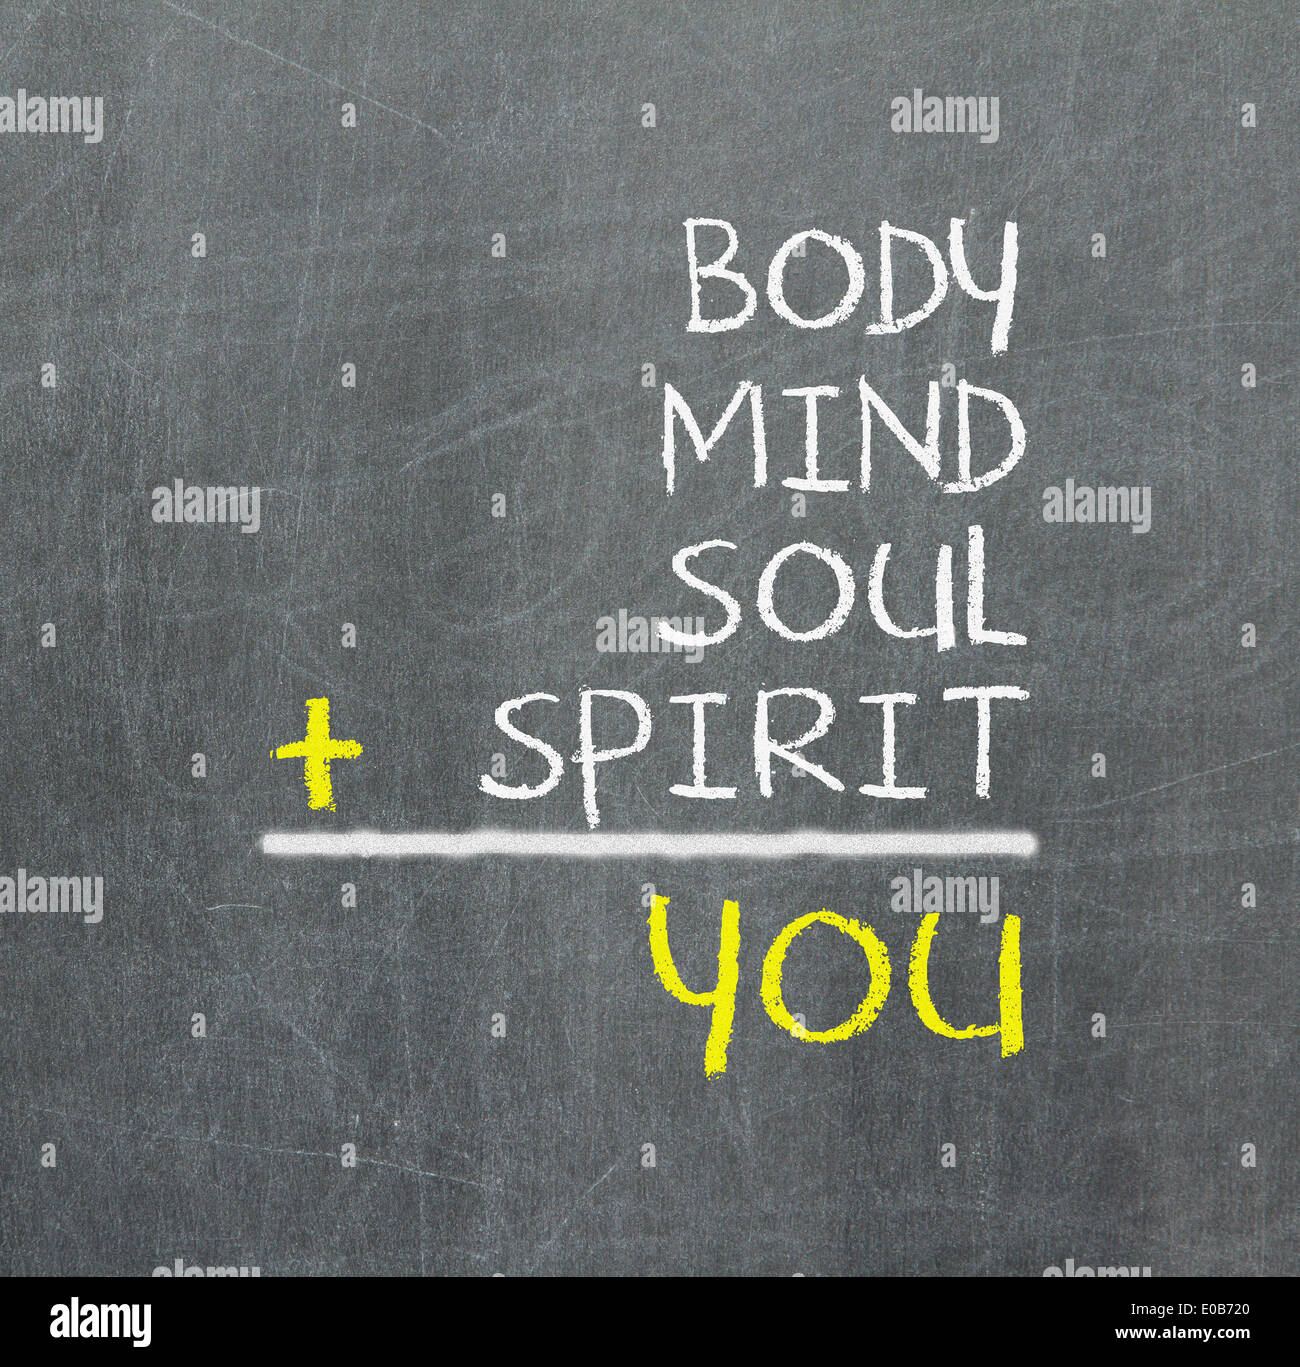 Si corpo mente spirito anima - una semplice mappa mentale per la crescita personale Foto Stock